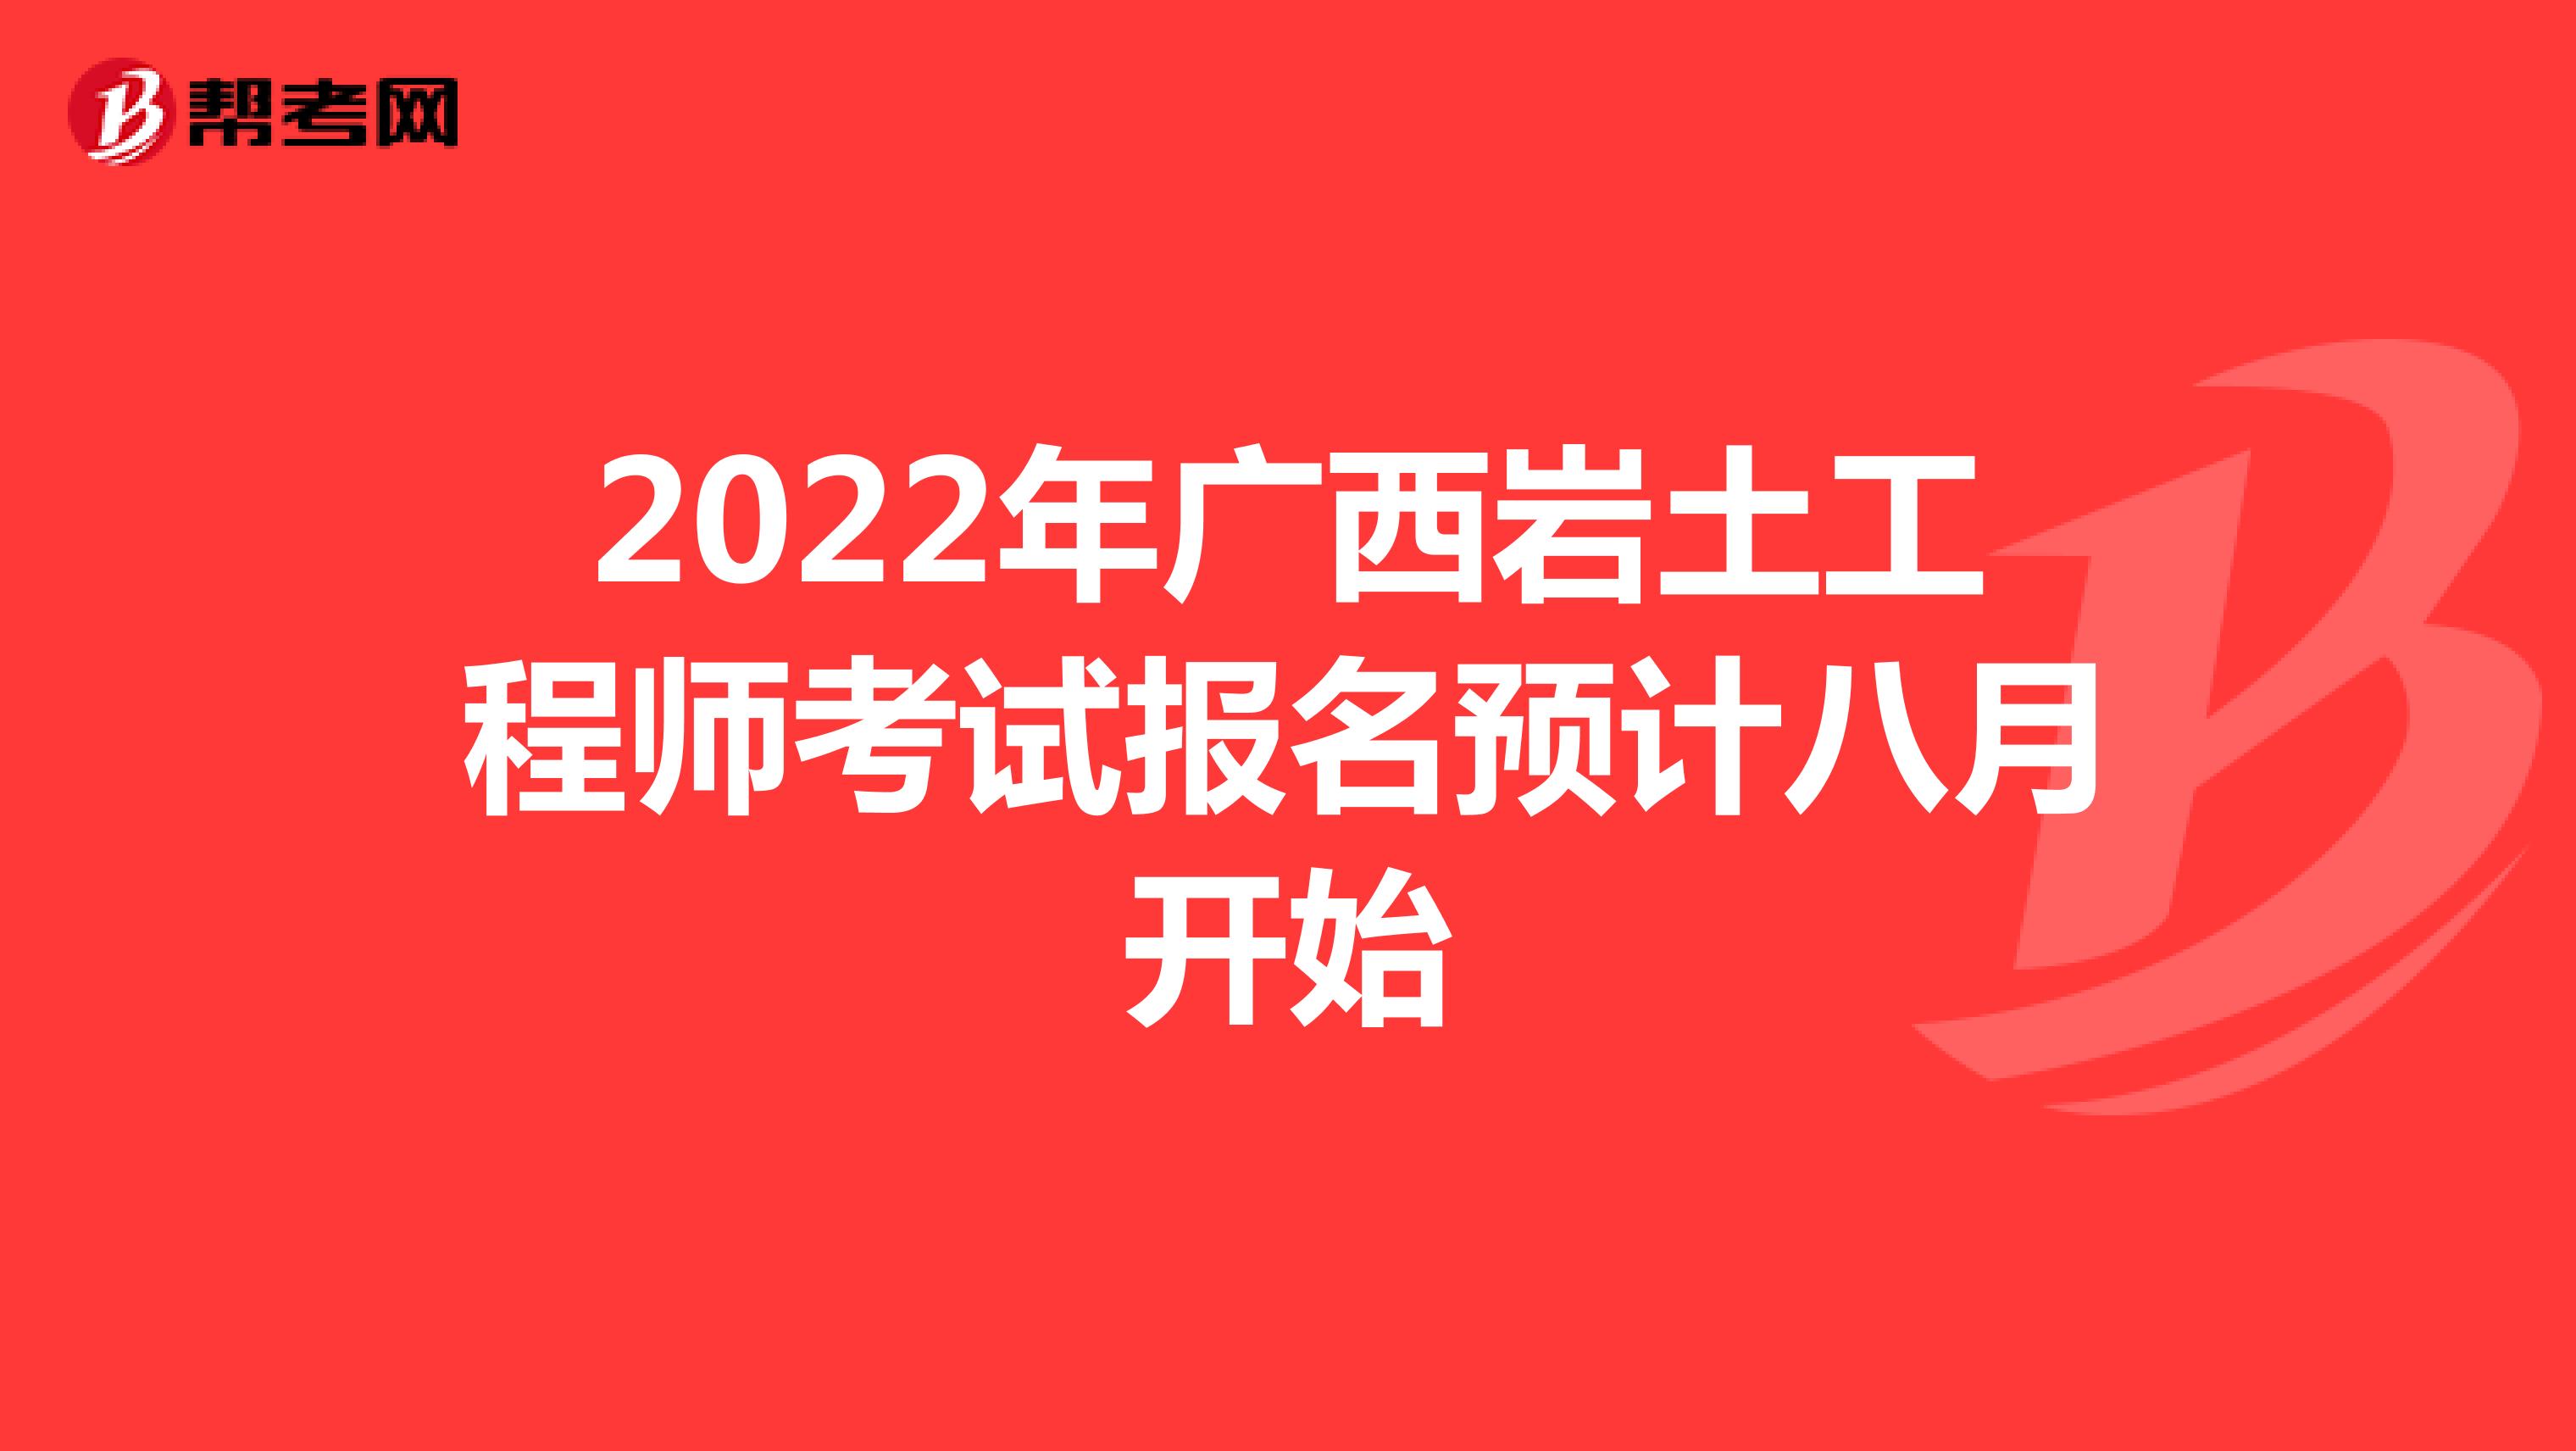 2022年广西岩土工程师考试报名预计八月开始